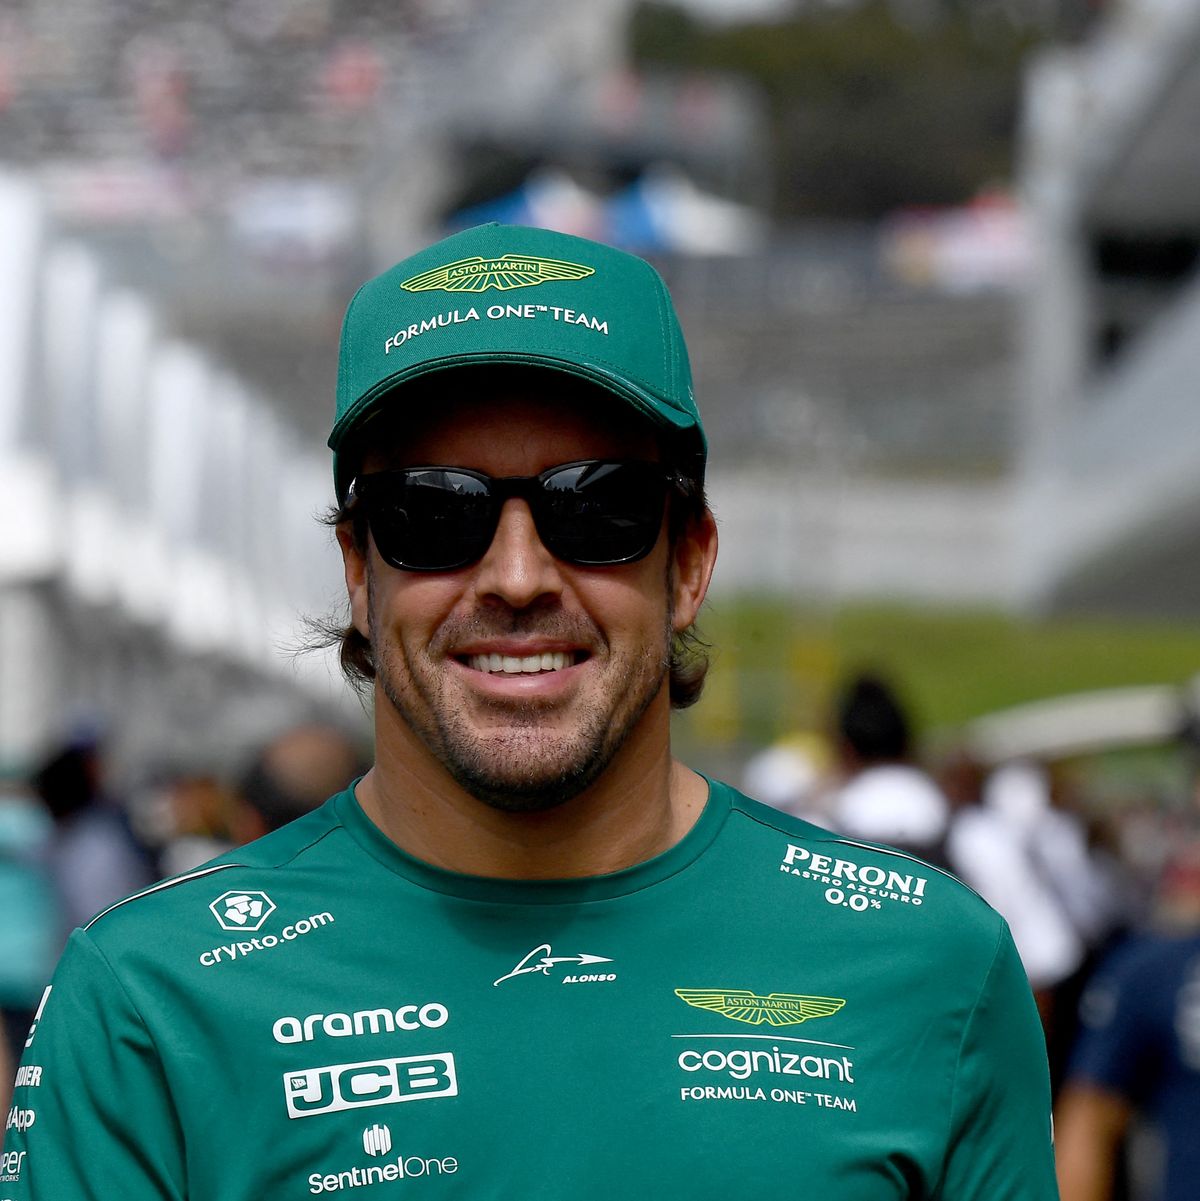 La gorra de Fernando Alonso y Aston Martin está en oferta